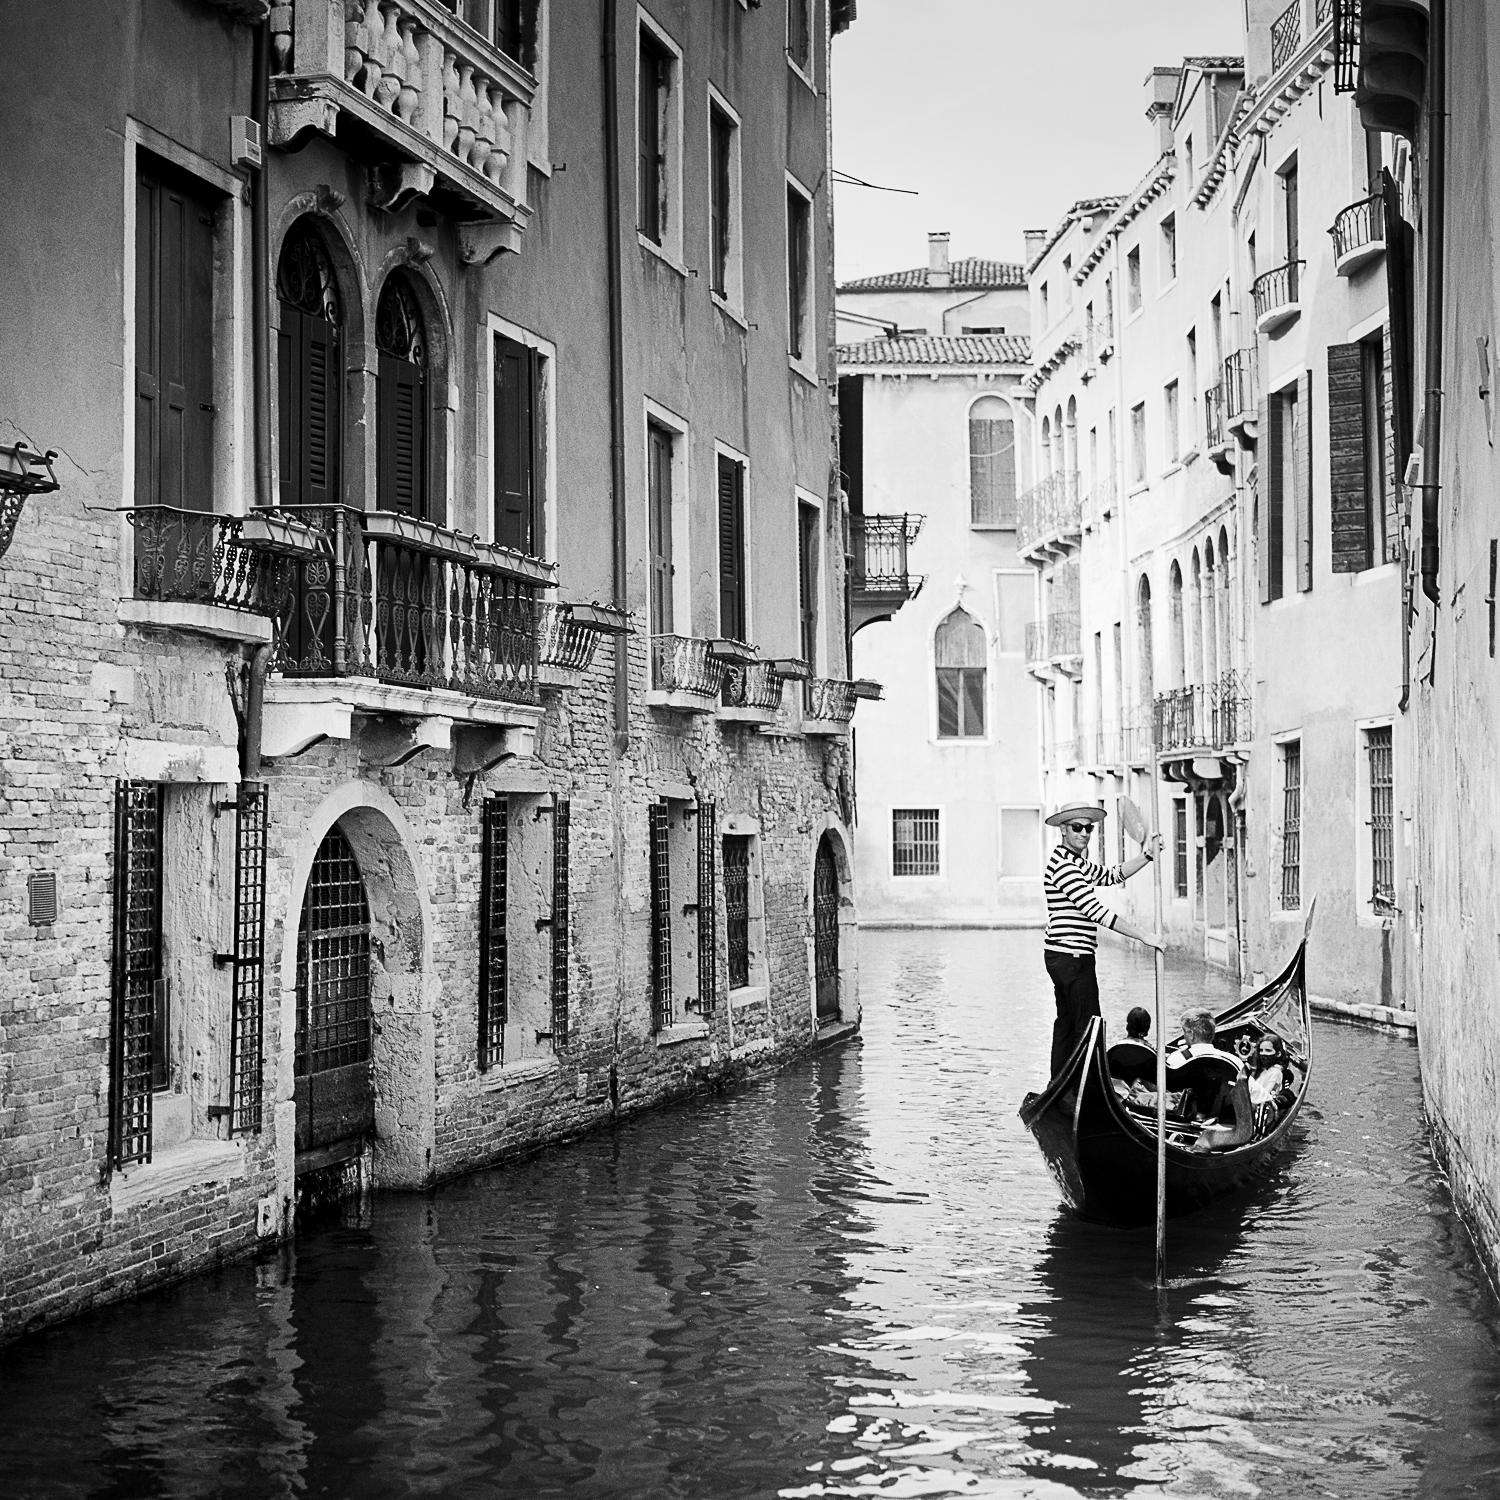 Gondoliere, Venedig, Italien, Schwarz-Weiß-Fotografie, Pigmentdruck, gerahmt – Photograph von Gerald Berghammer